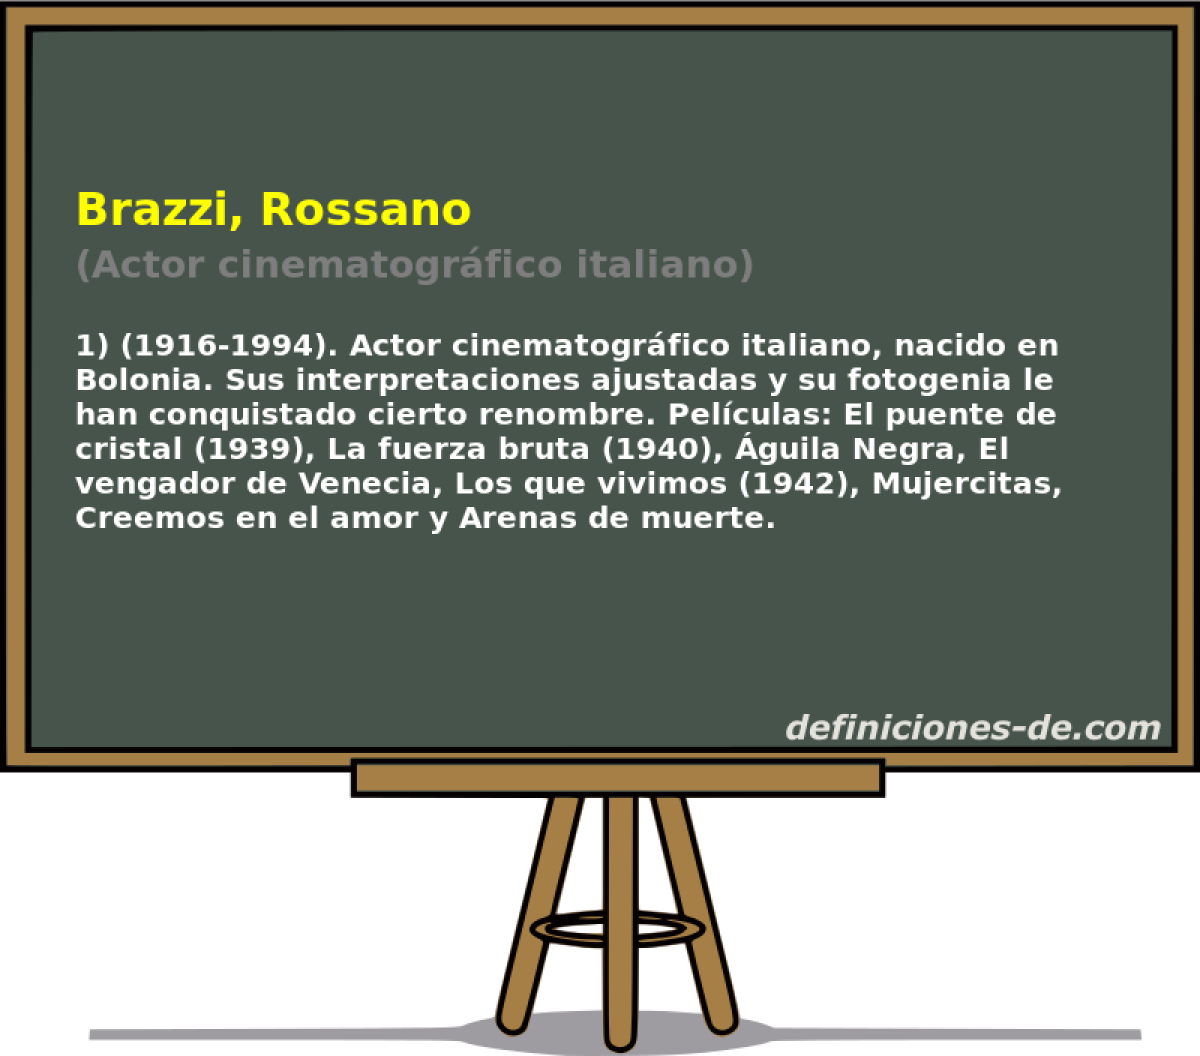 Brazzi, Rossano (Actor cinematogrfico italiano)